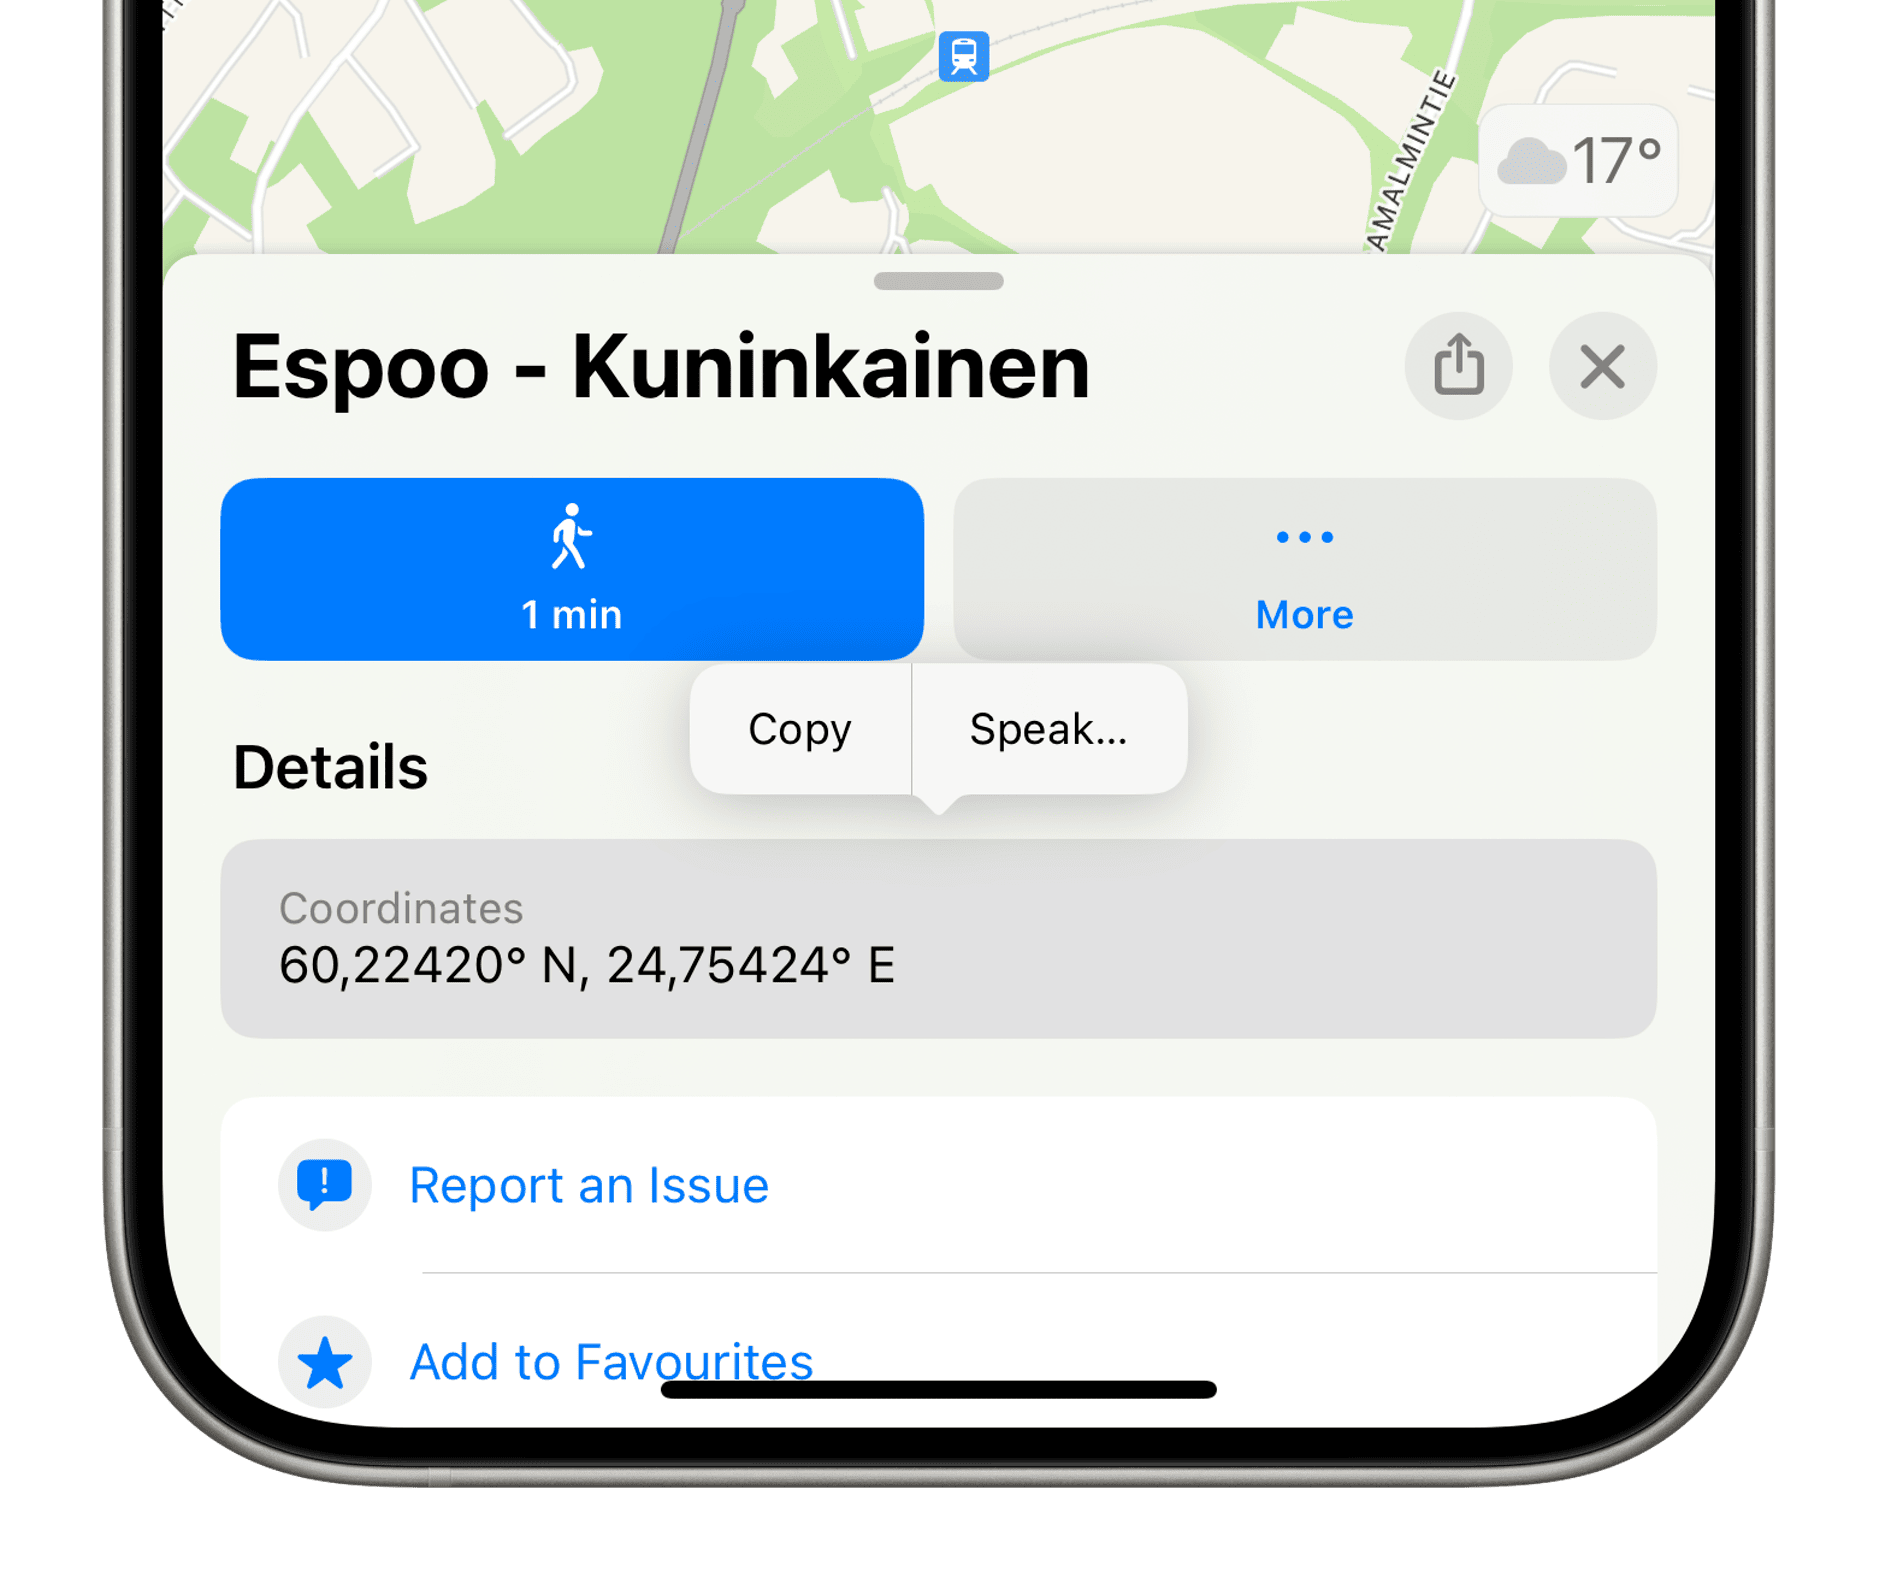 Das Bild zeigt einen Smartphone-Bildschirm mit einer geöffneten Karten-App, die den Standort “Espoo - Kuninkaainen” anzeigt. Es sind Koordinaten sichtbar, und es gibt Optionen zum Kopieren oder Sprechen der Details sowie eine Wetteranzeige, die 17 Grad anzeigt.